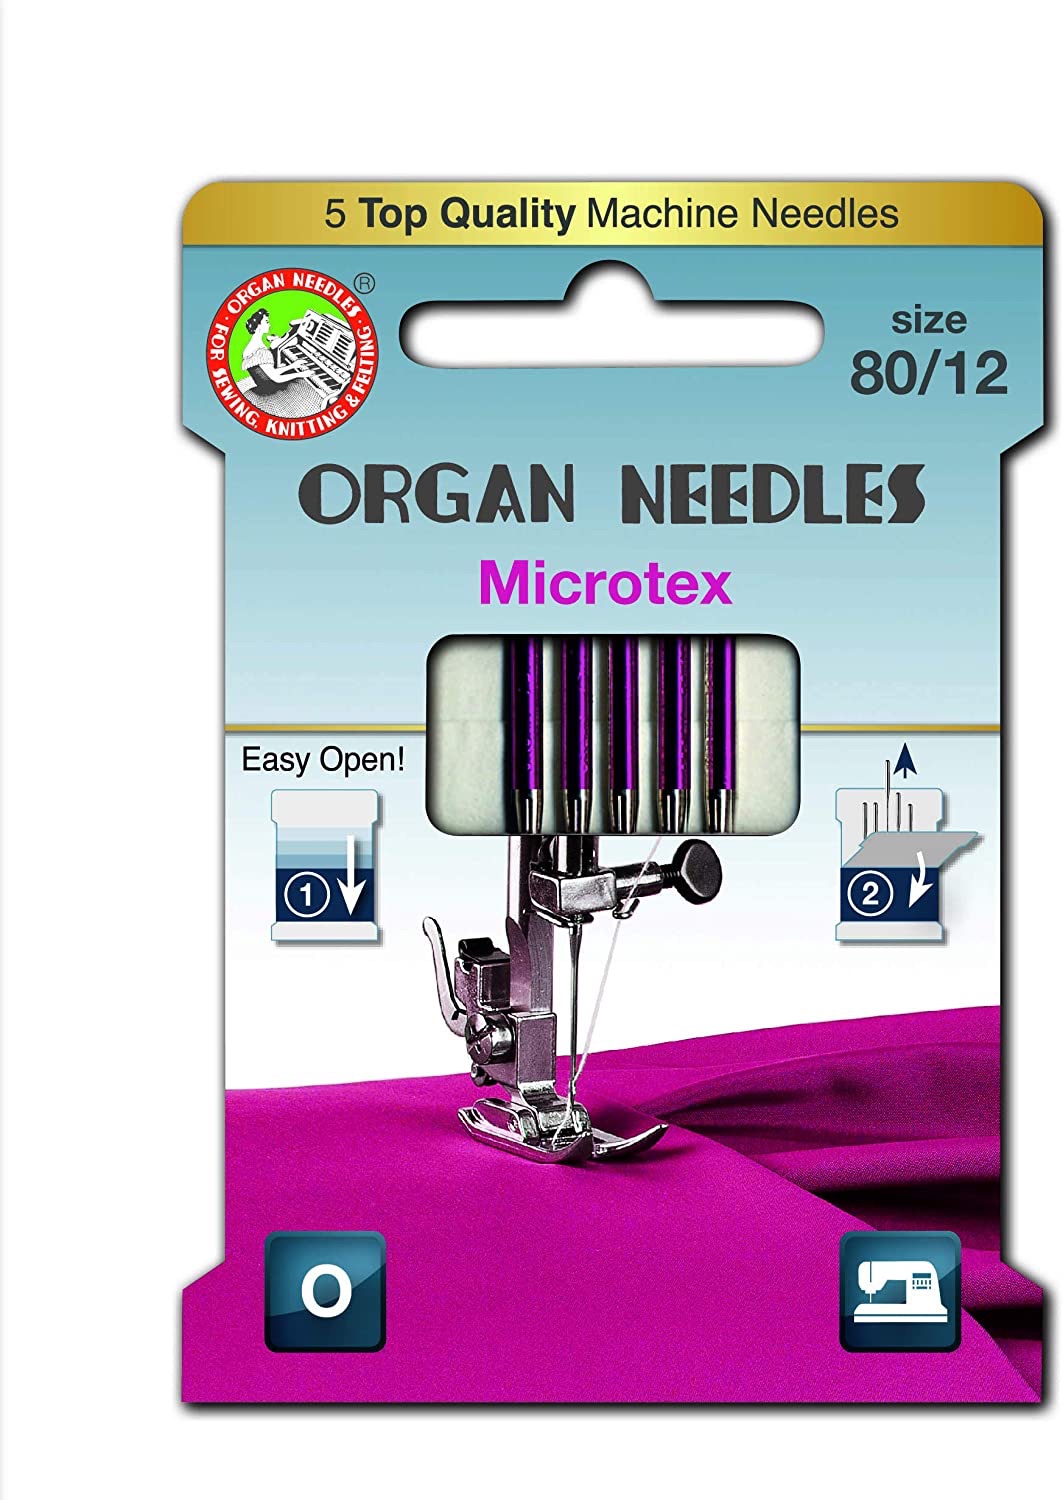 Microtex Needles - Size 80/12 (Organ)